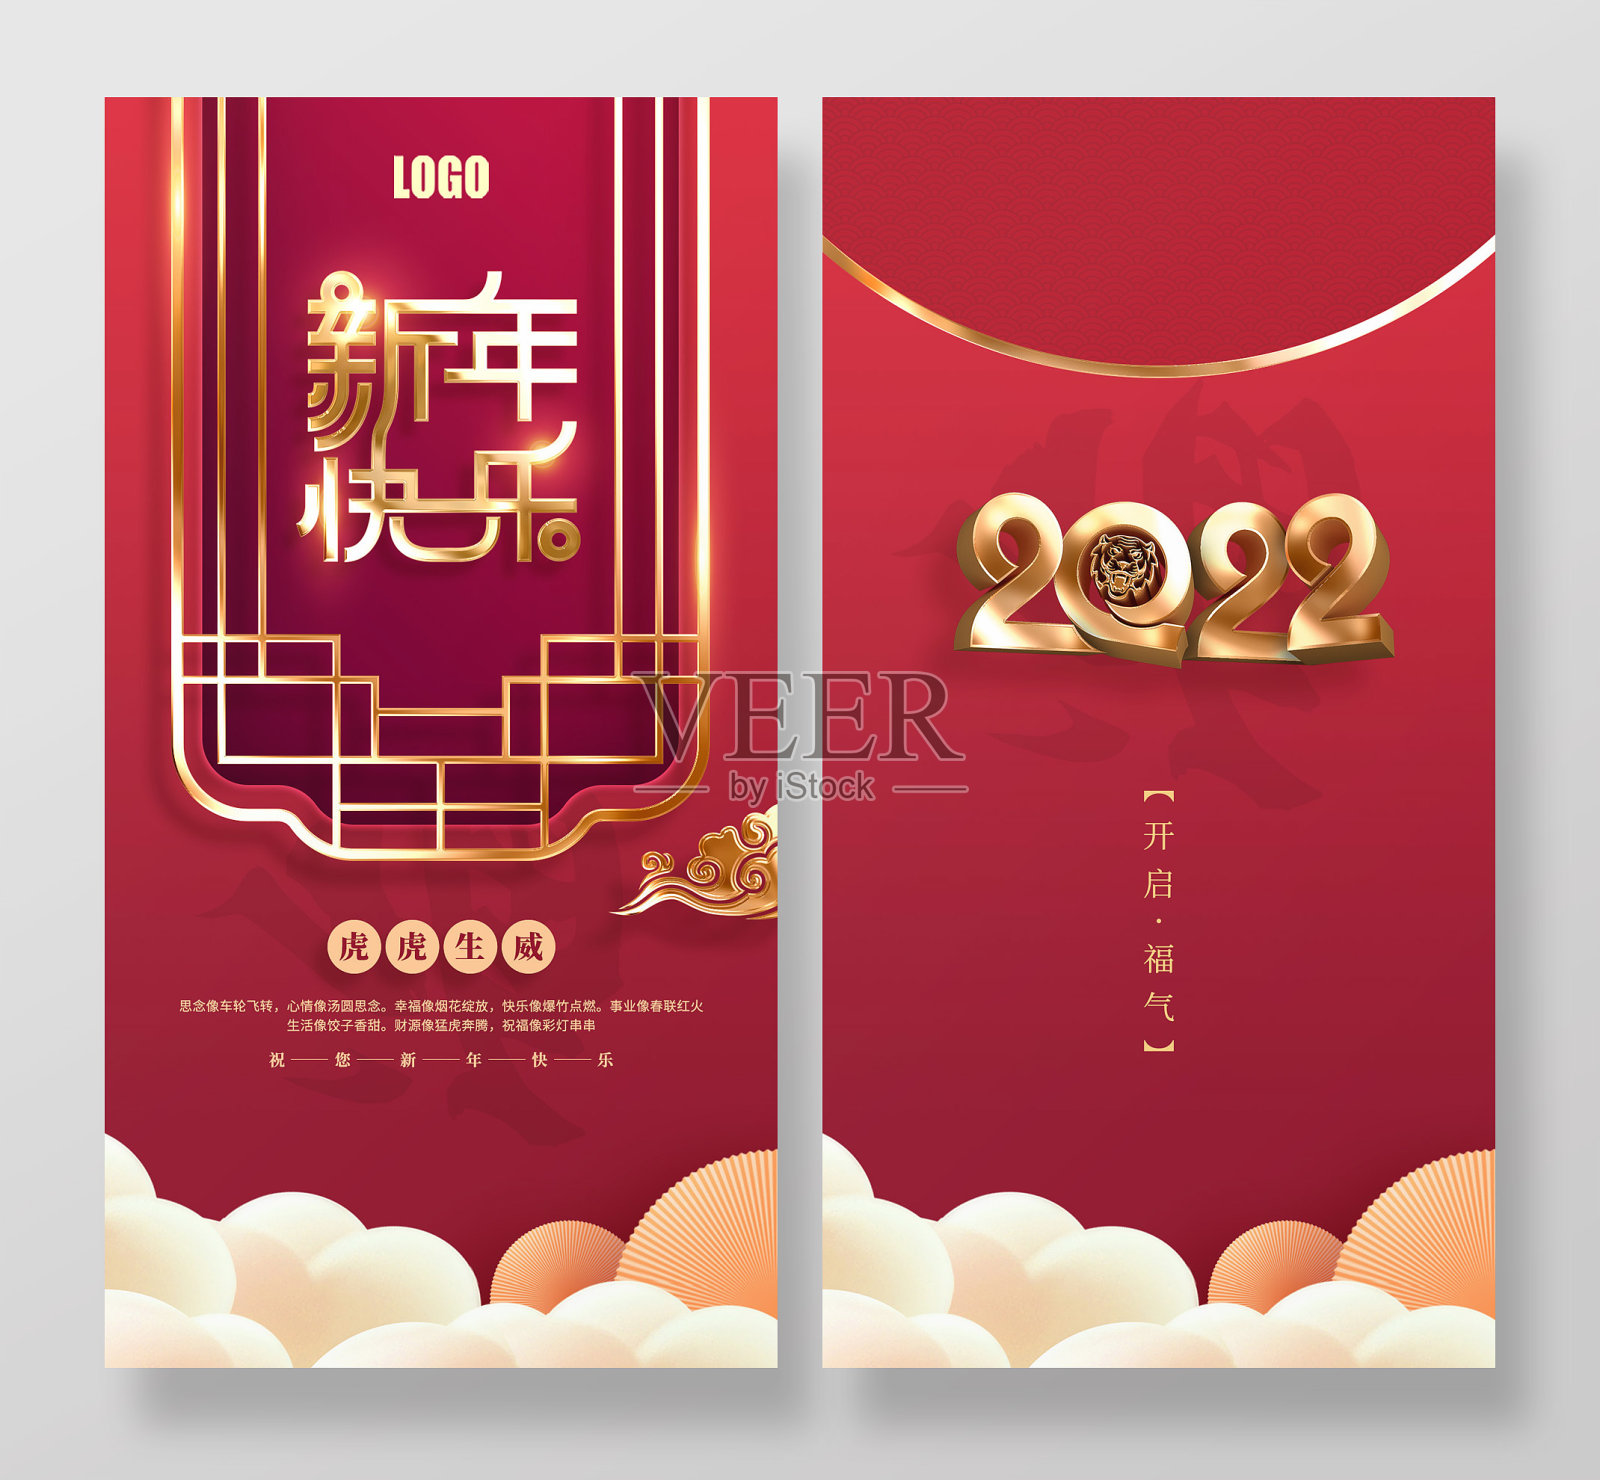 原创红色喜庆2022虎年祝福红包设计模板素材